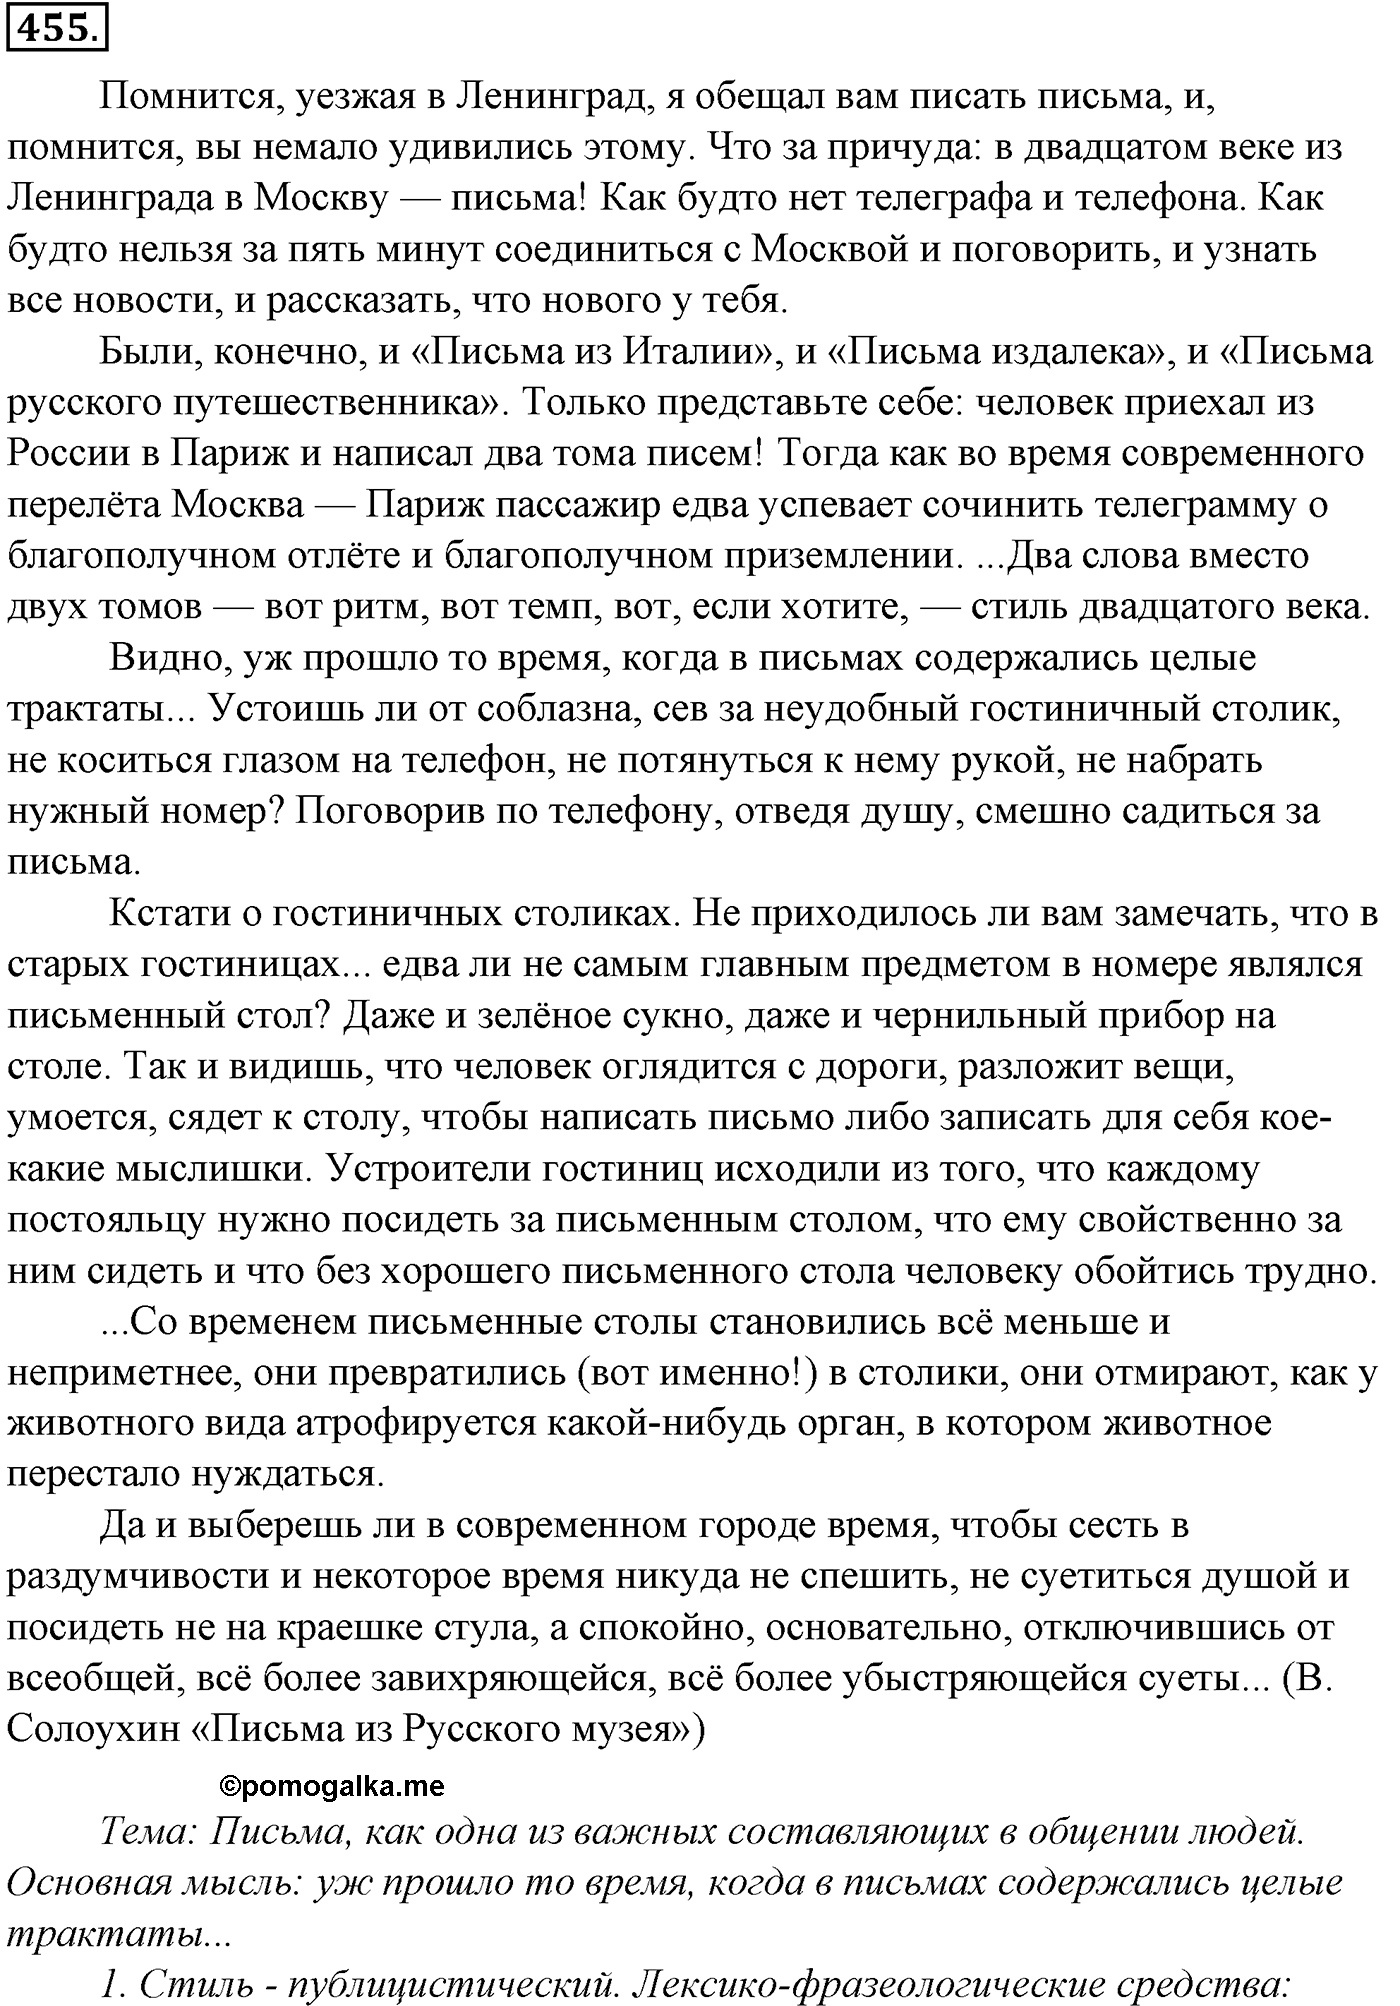 упражнение №455 русский язык 10-11 класс Гольцова